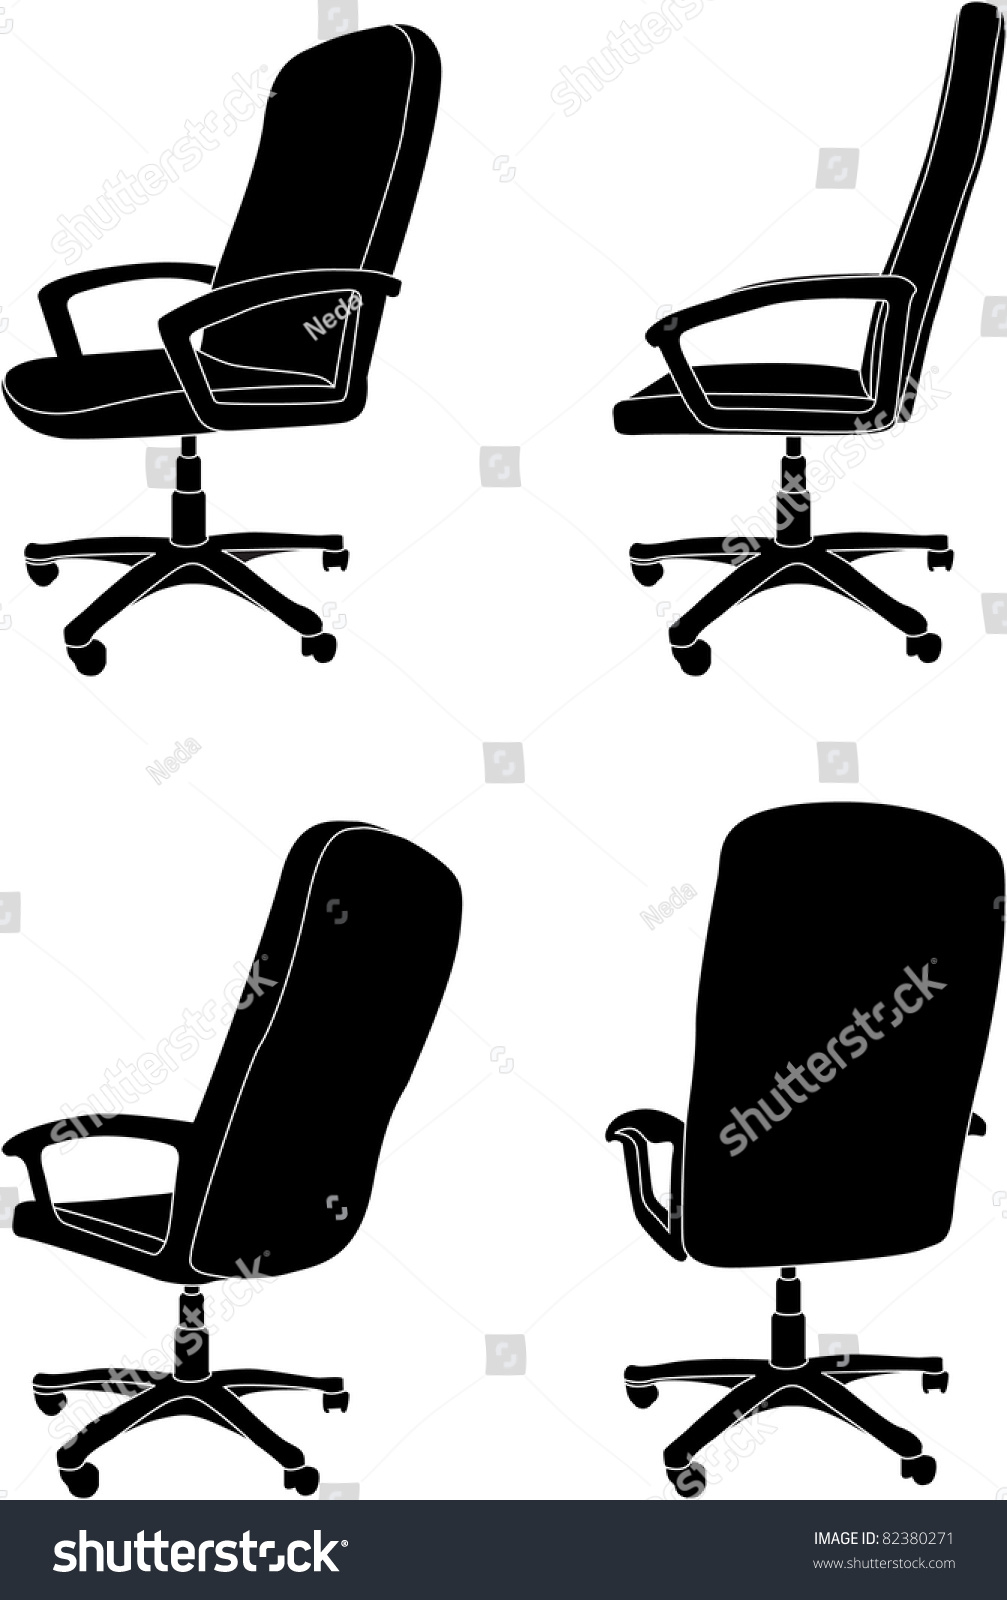 Vector Office Chair - 82380271 : Shutterstock